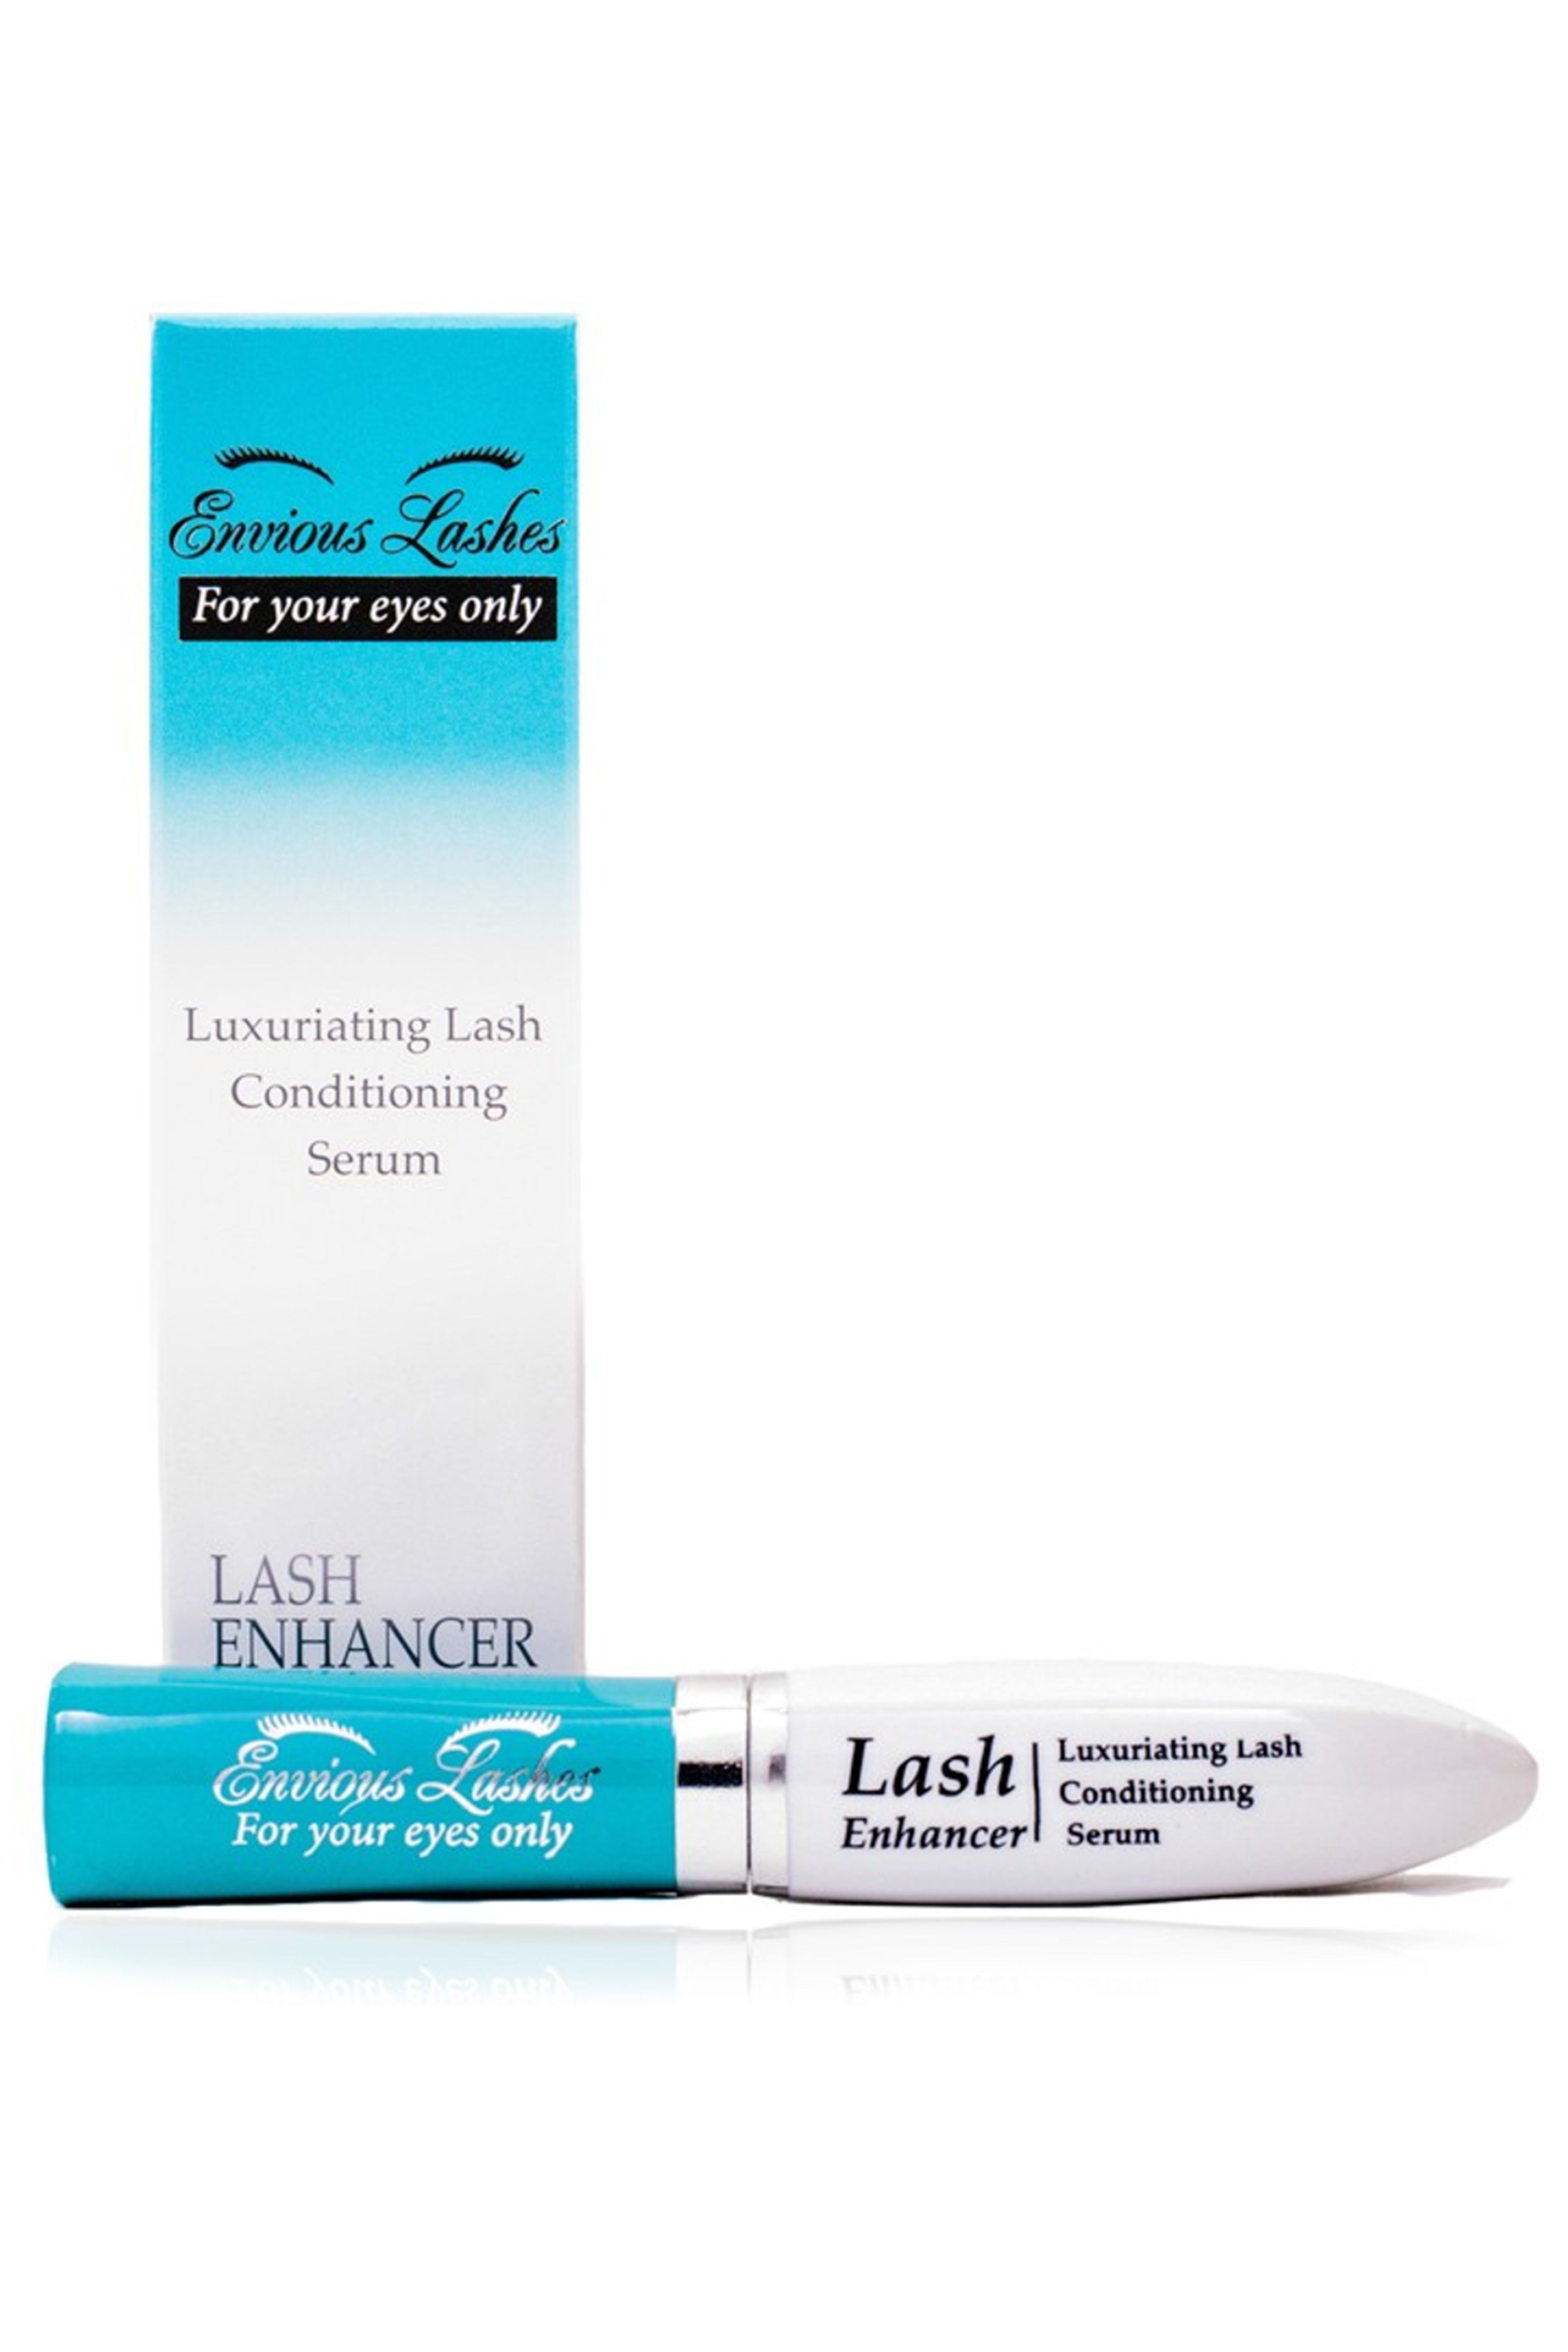 Luxuriating Lash Conditioning Serum